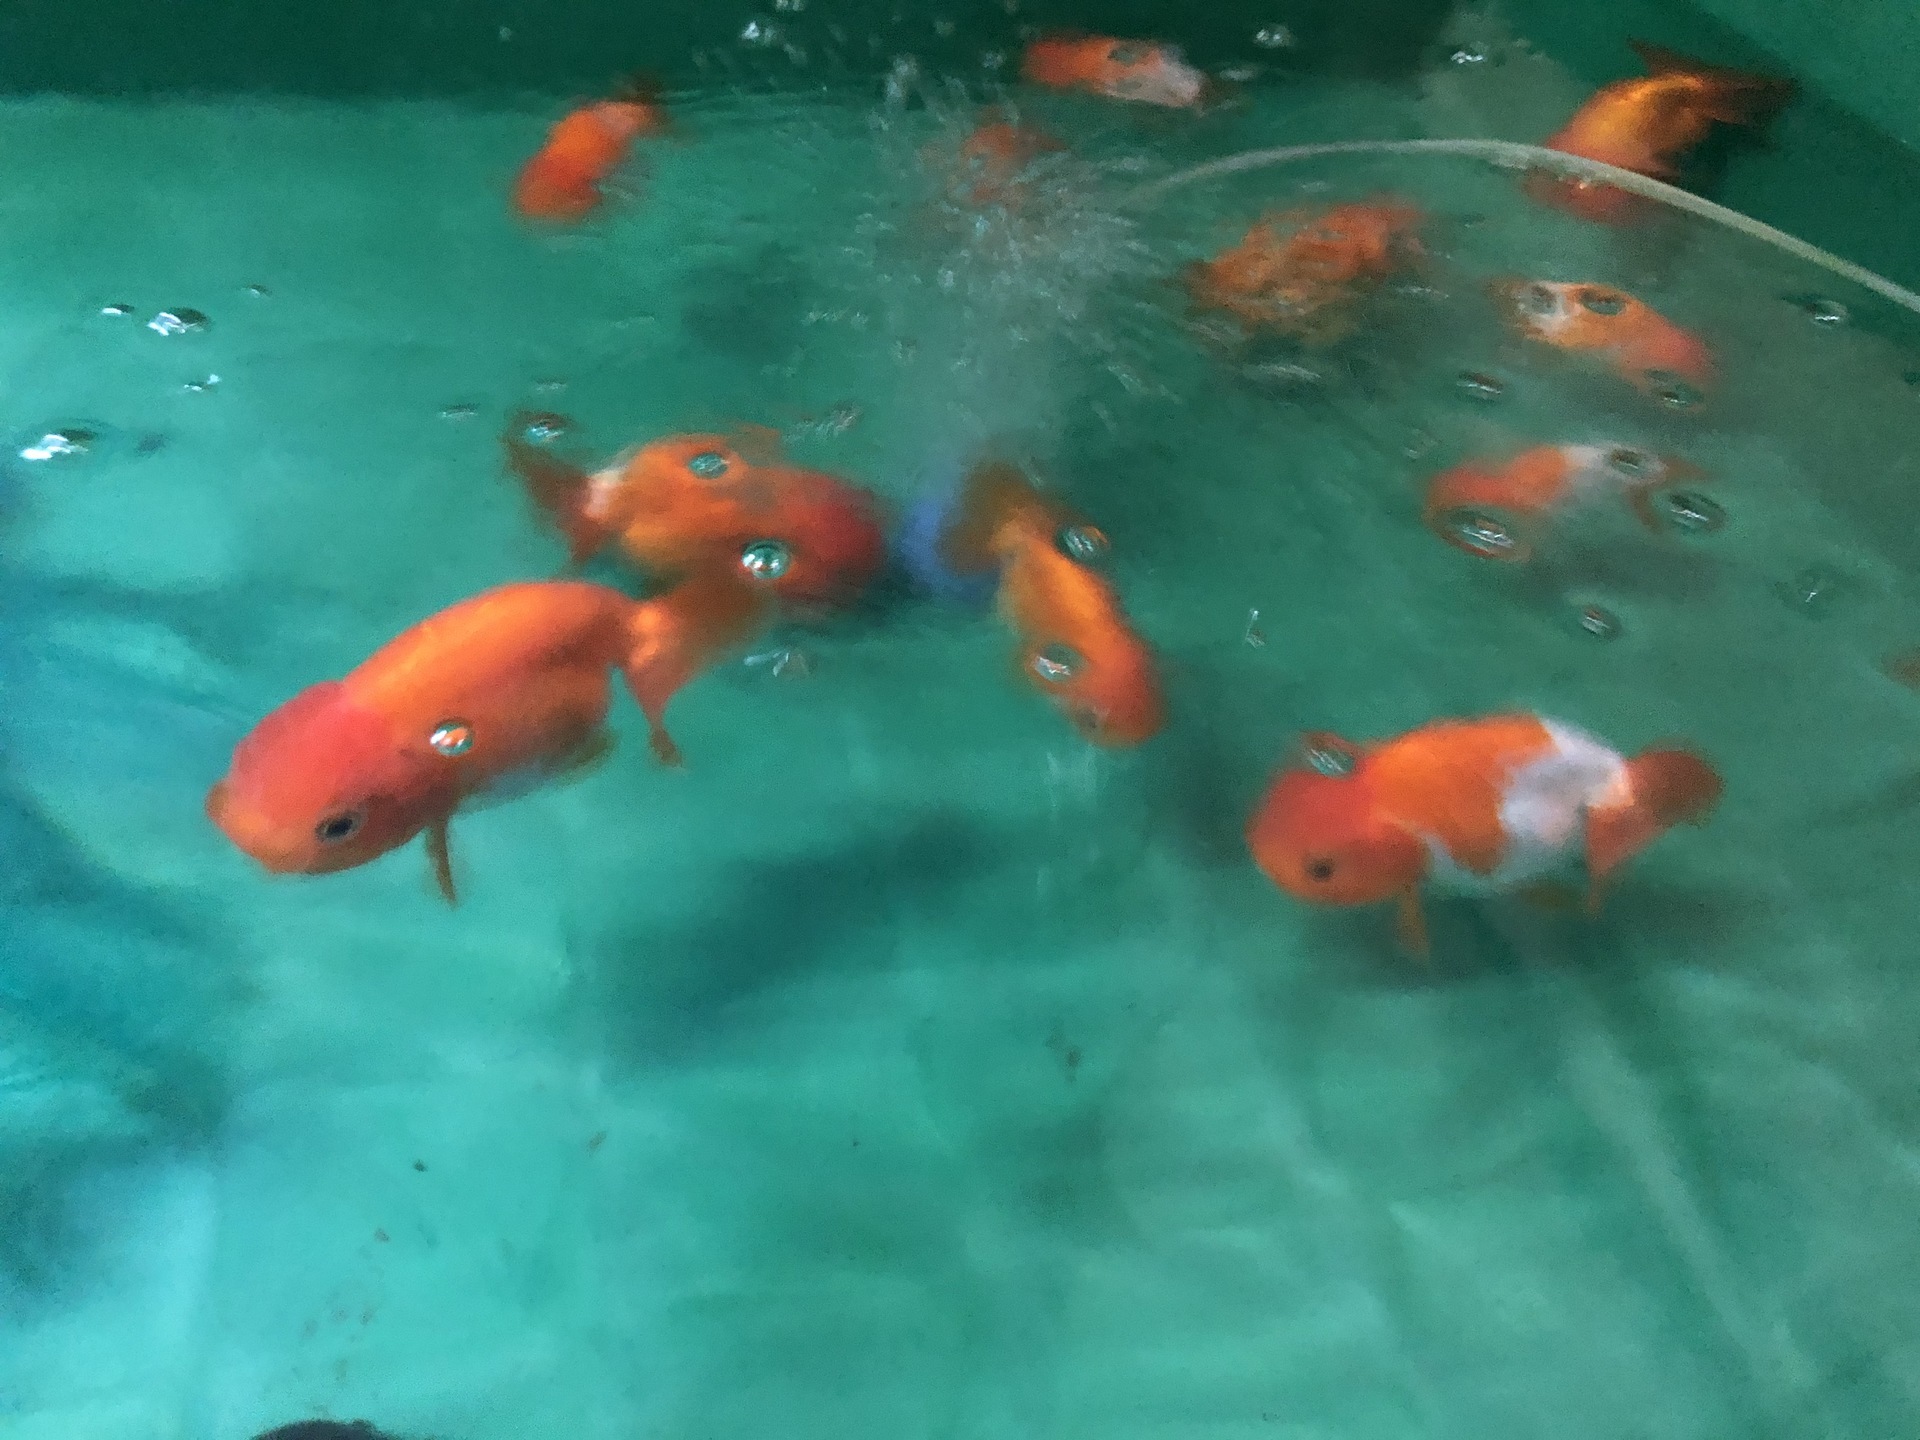 ハンドメイド BIGサイズ『金魚のお池』 | www.esn-ub.org